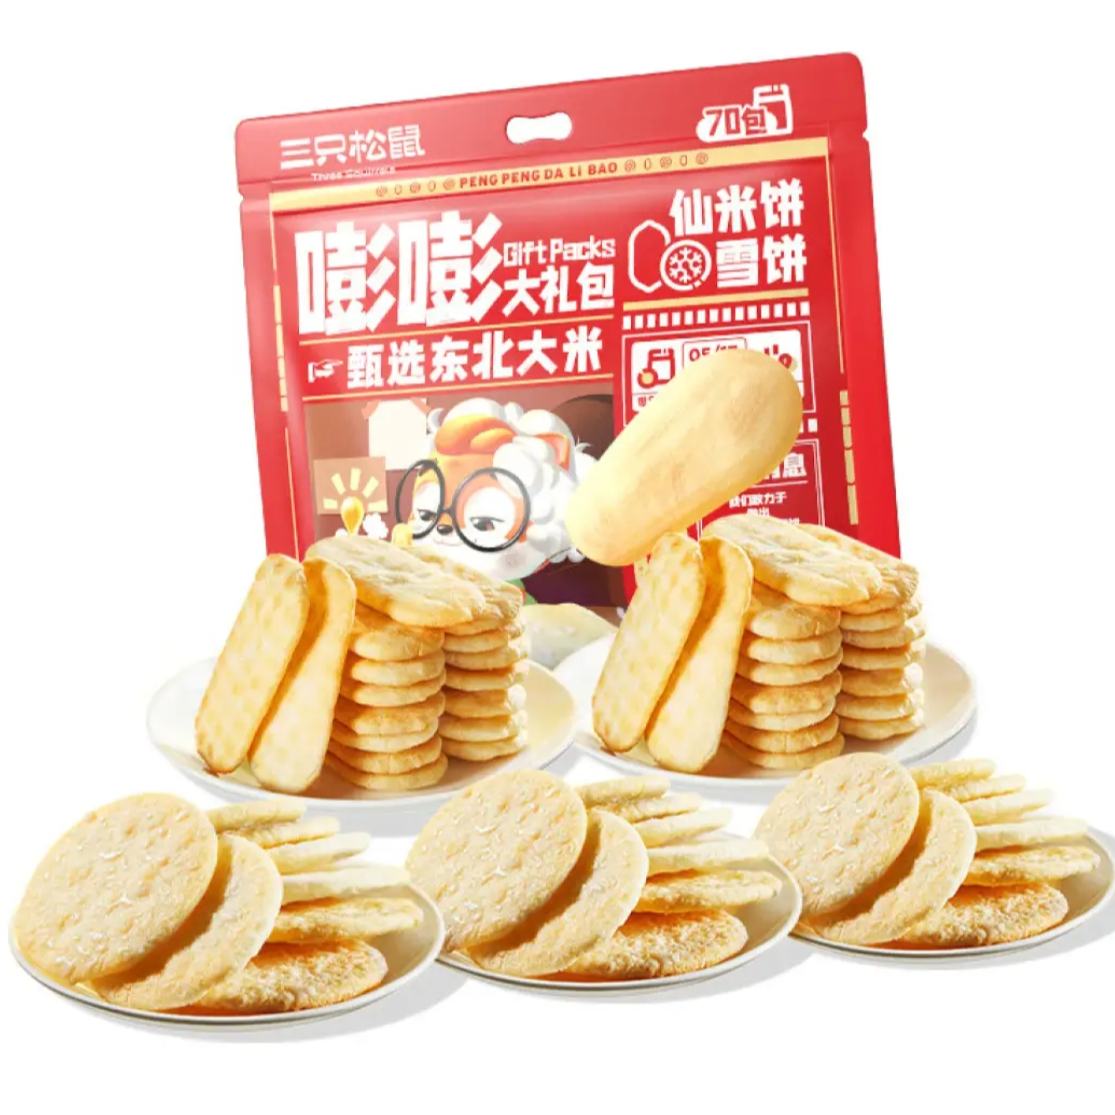 三只松鼠儿时味道雪米饼 【推荐】嘭嘭膨雪饼仙贝礼包500g 17.90元